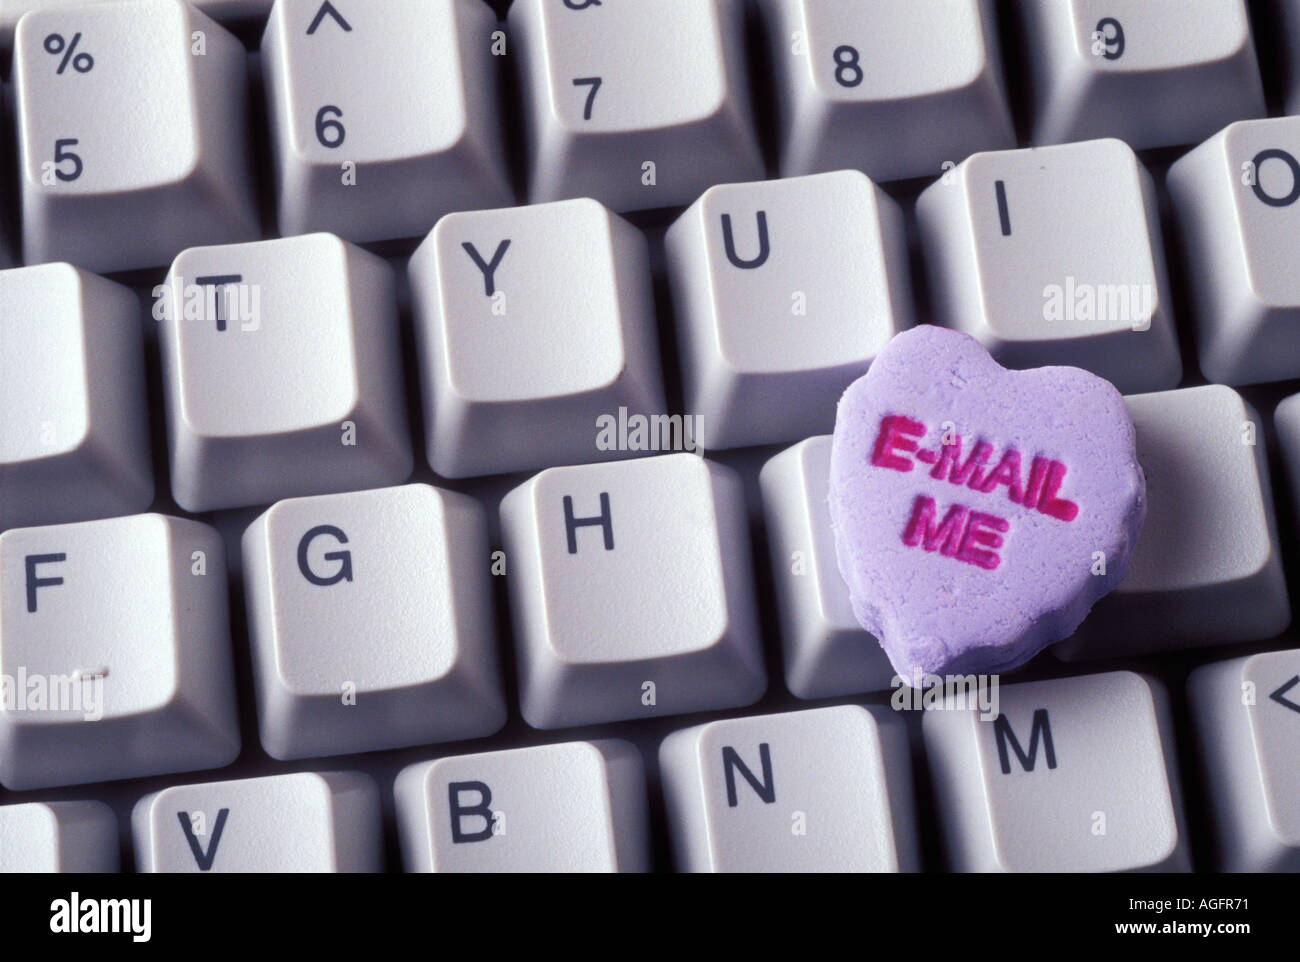 Bonbons en forme de coeur avec les mots e mail me sur clavier Photo Stock -  Alamy